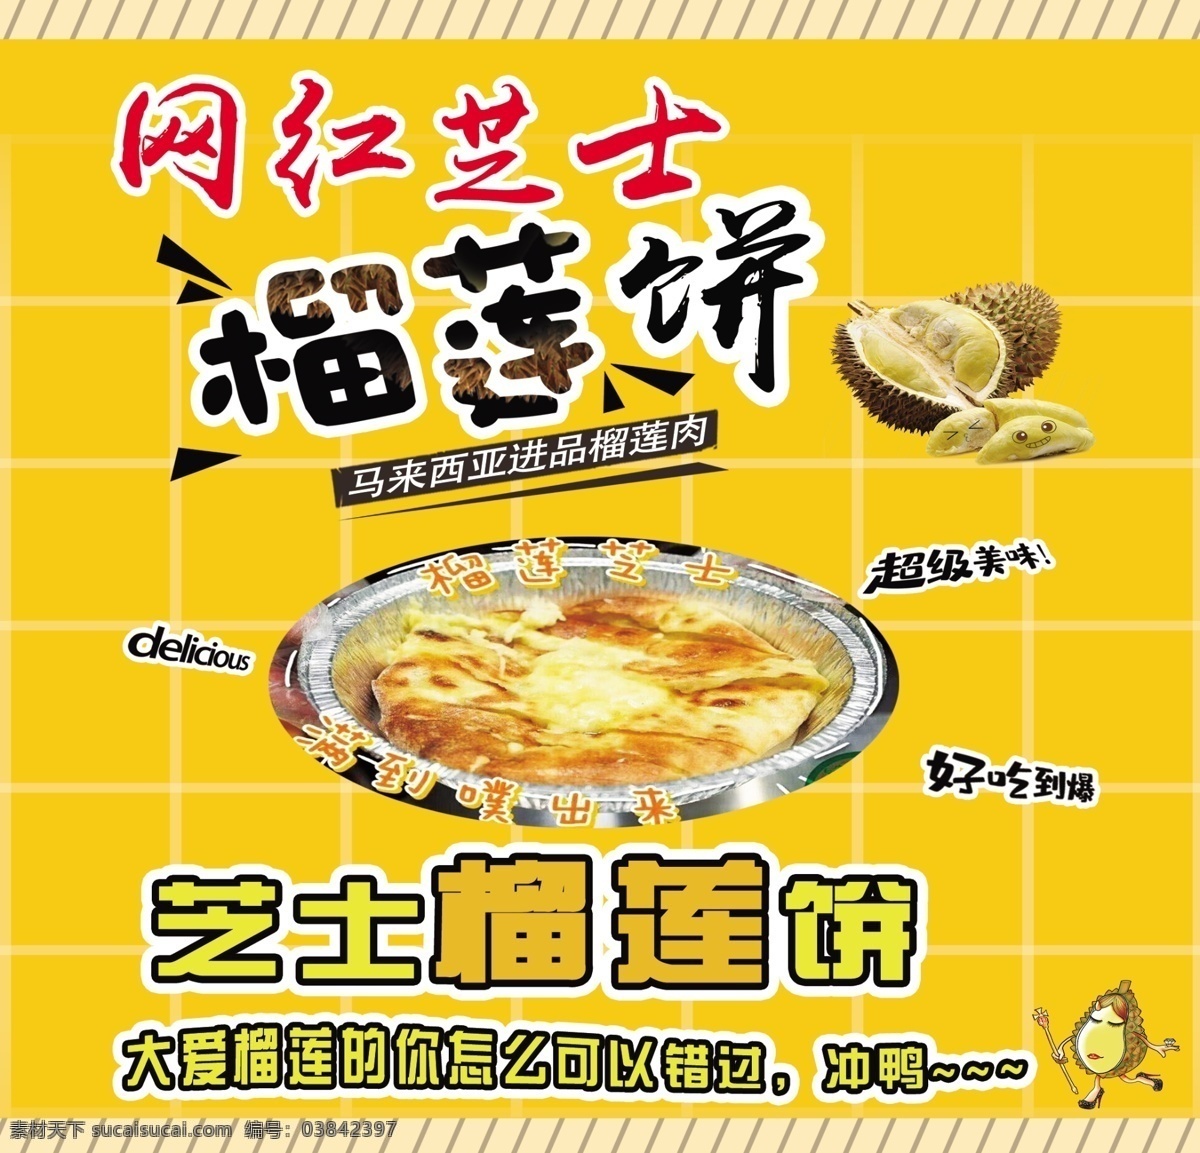 榴莲饼 彩页 宣传海报 产品展示 芝士